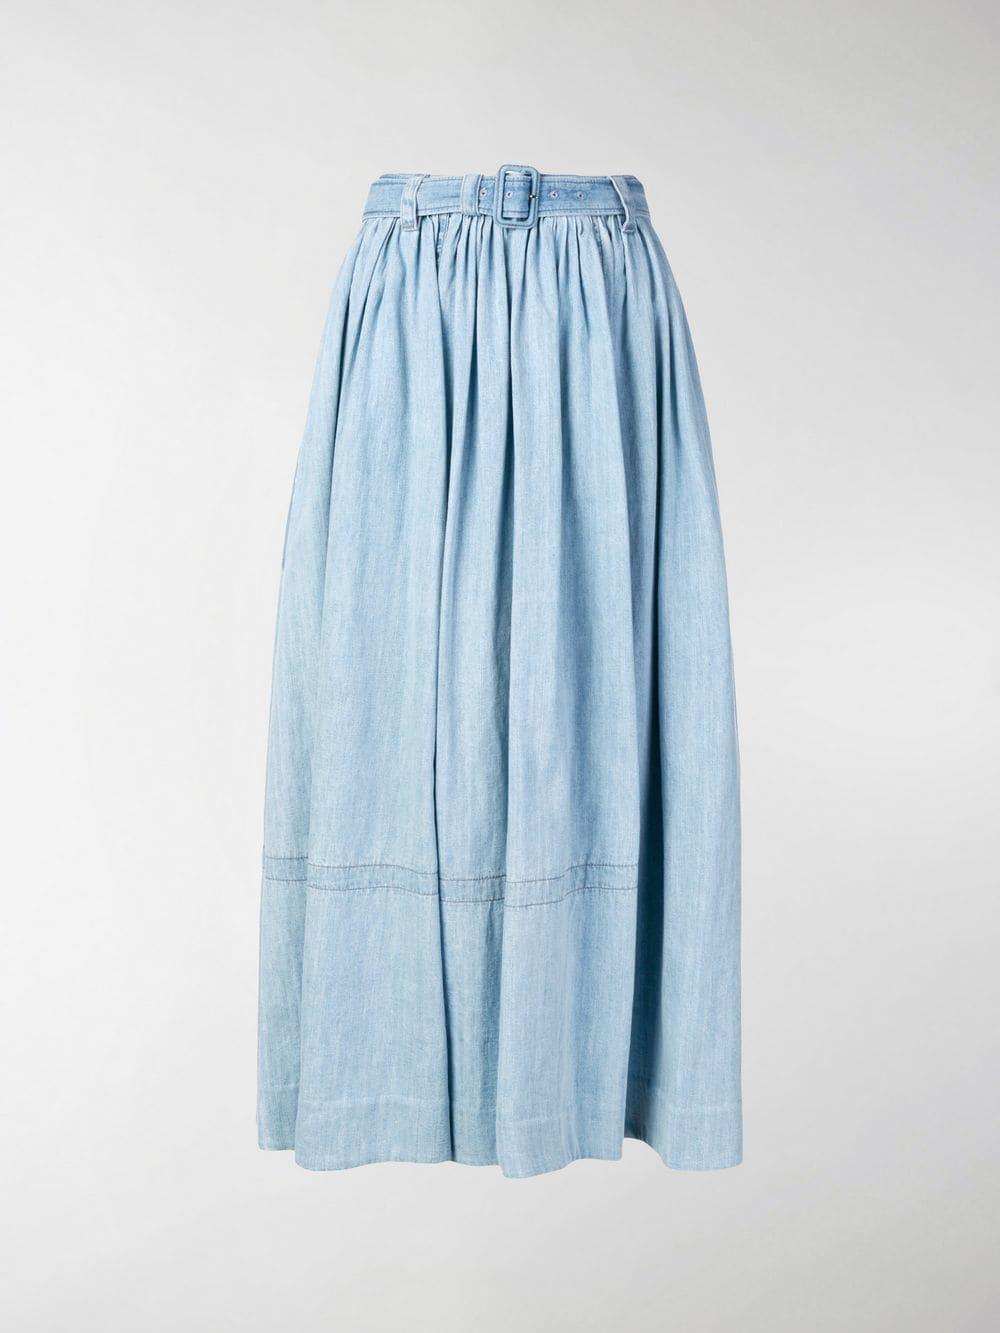 Prada Long Denim Skirt in Blue | Lyst